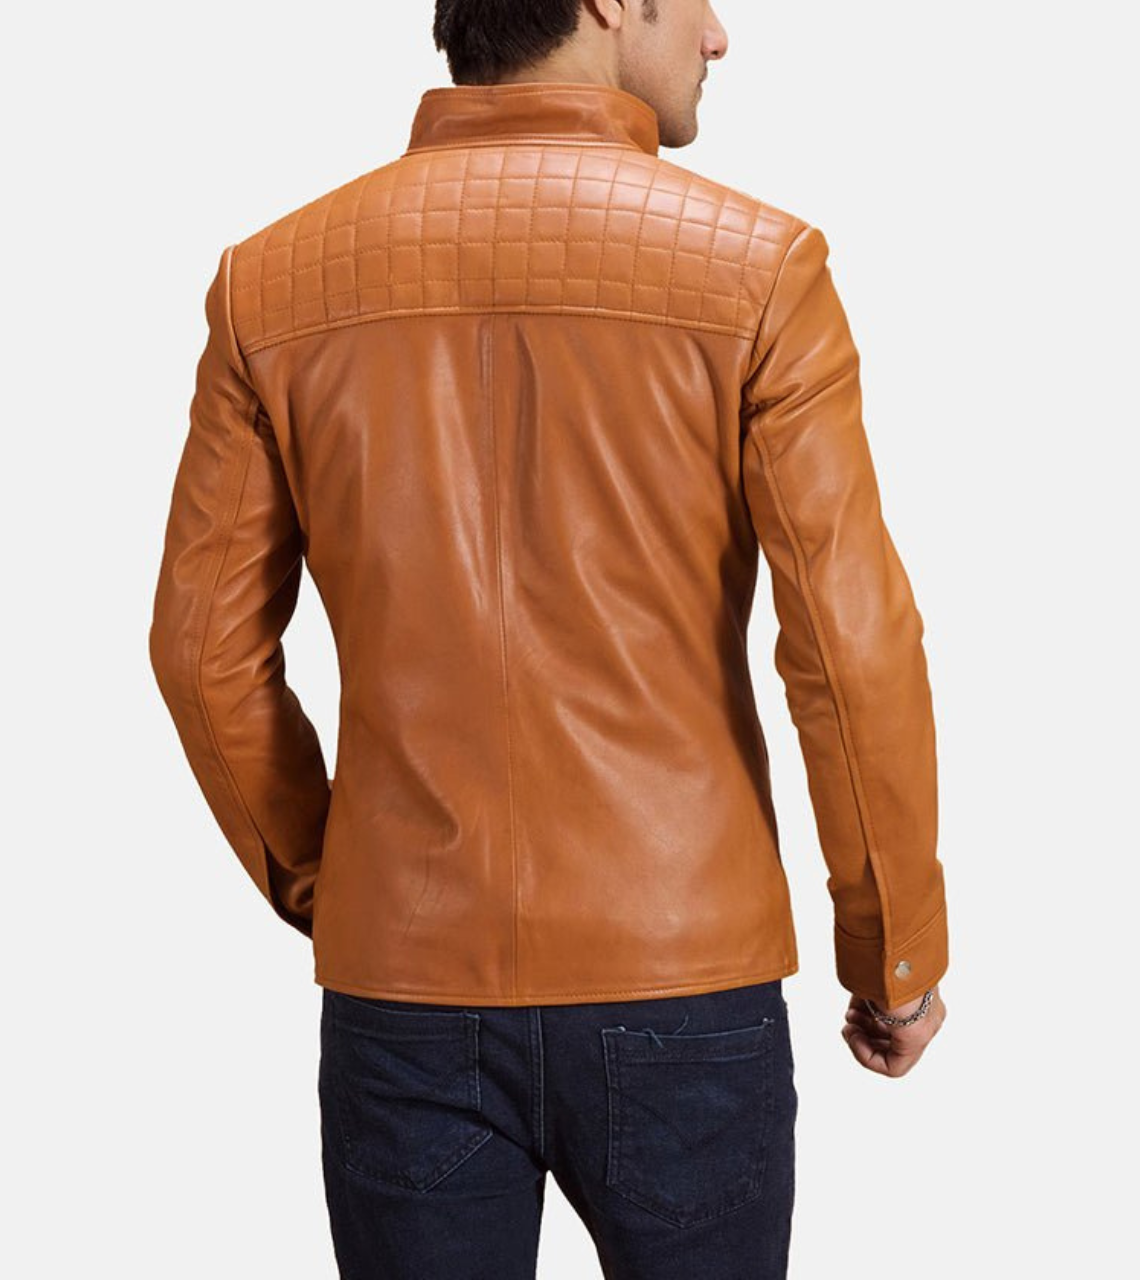 Men's Camel Brown Biker Leather Jacket